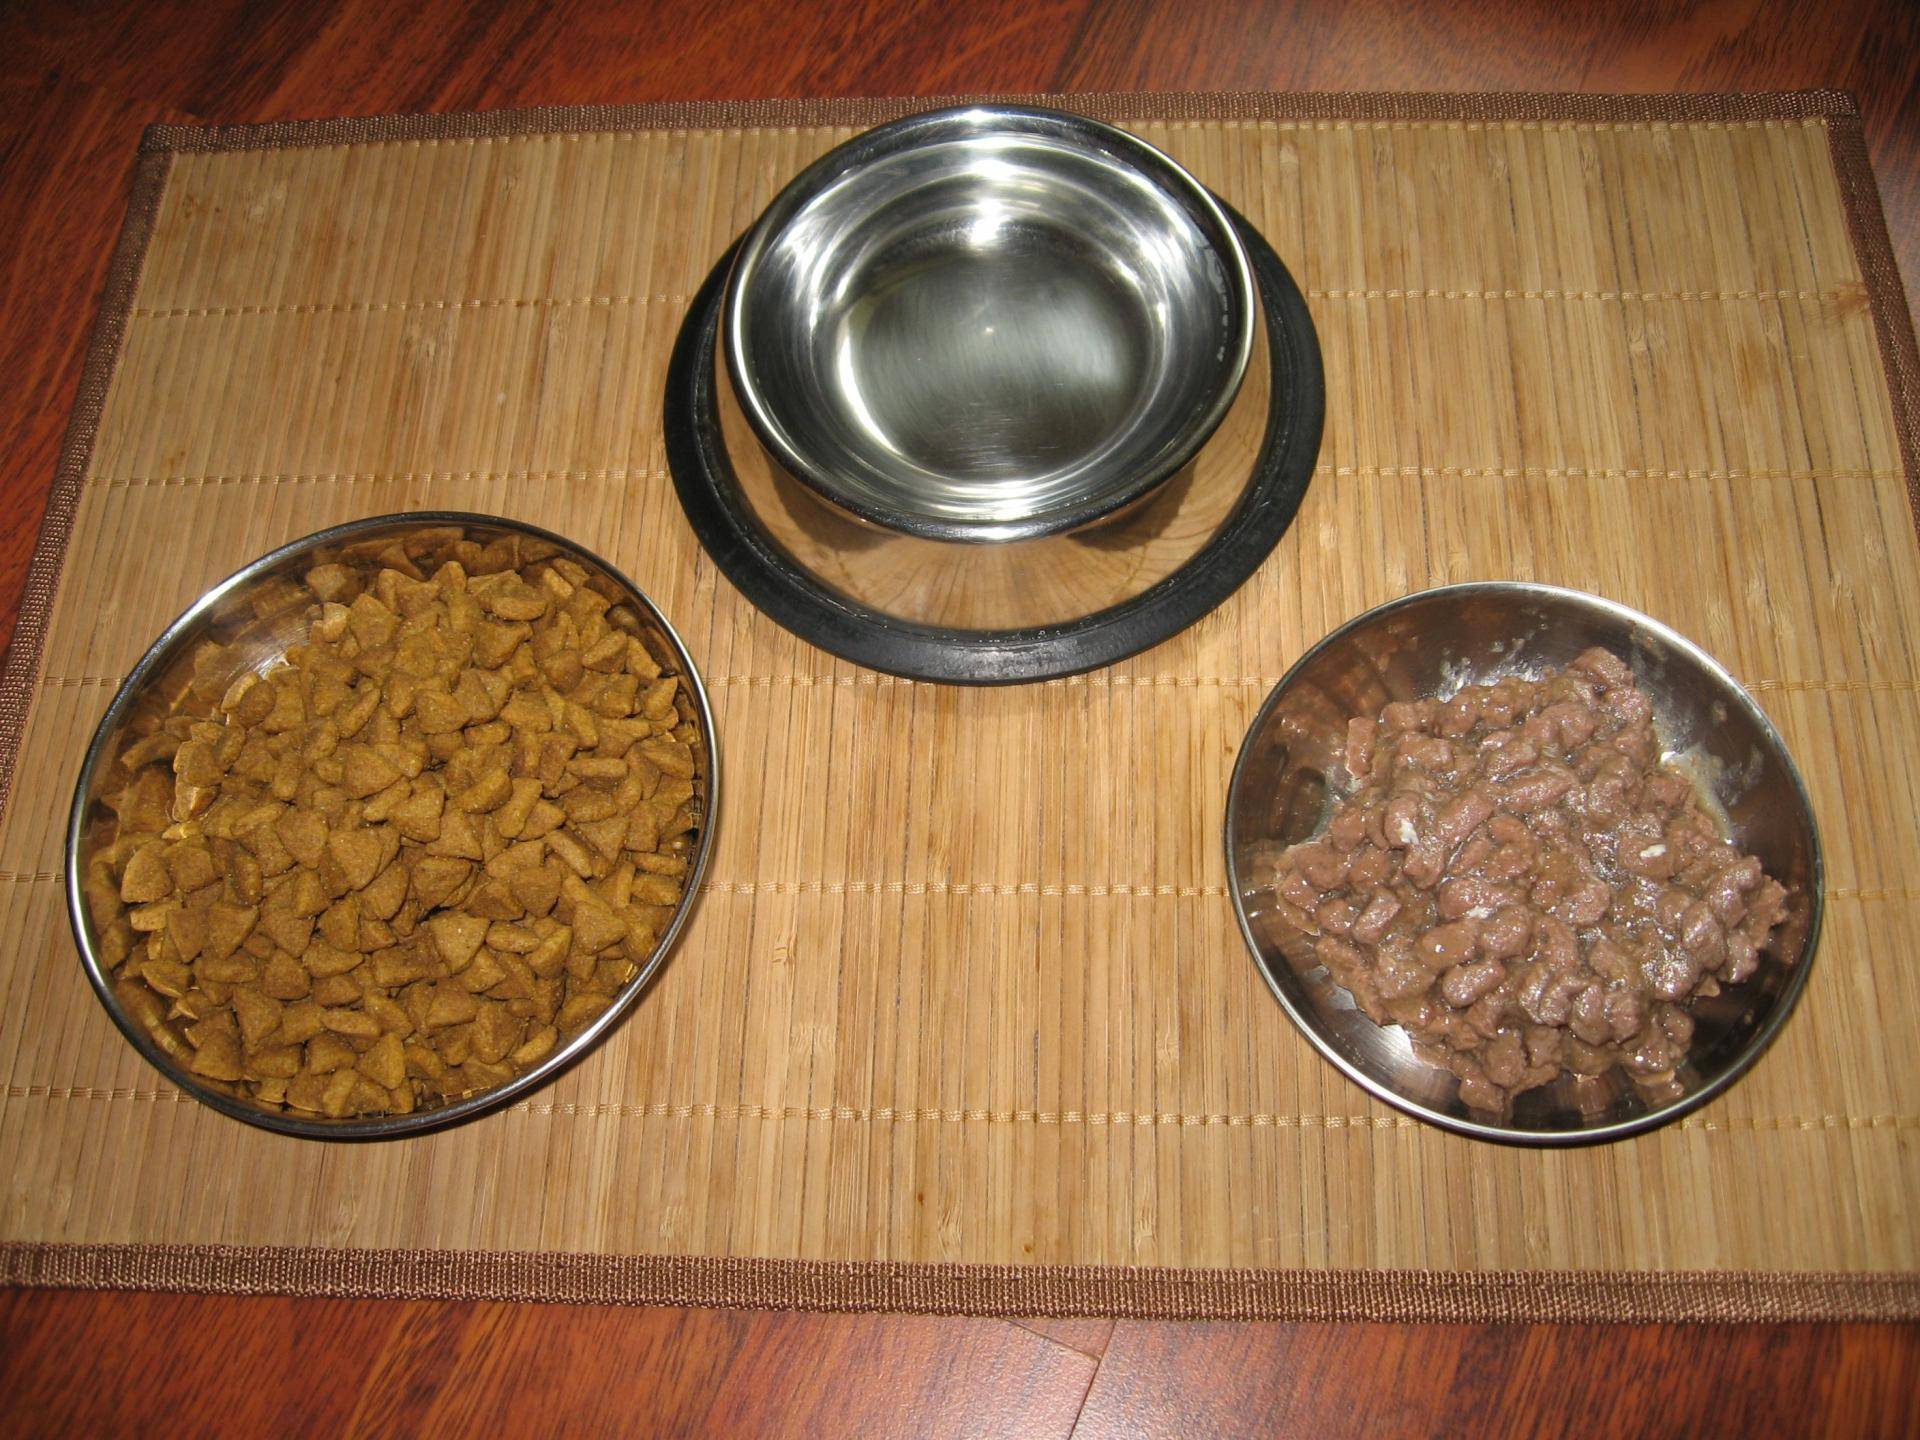 Можно ли одновременно кормить кошку сухим и влажным кормом?